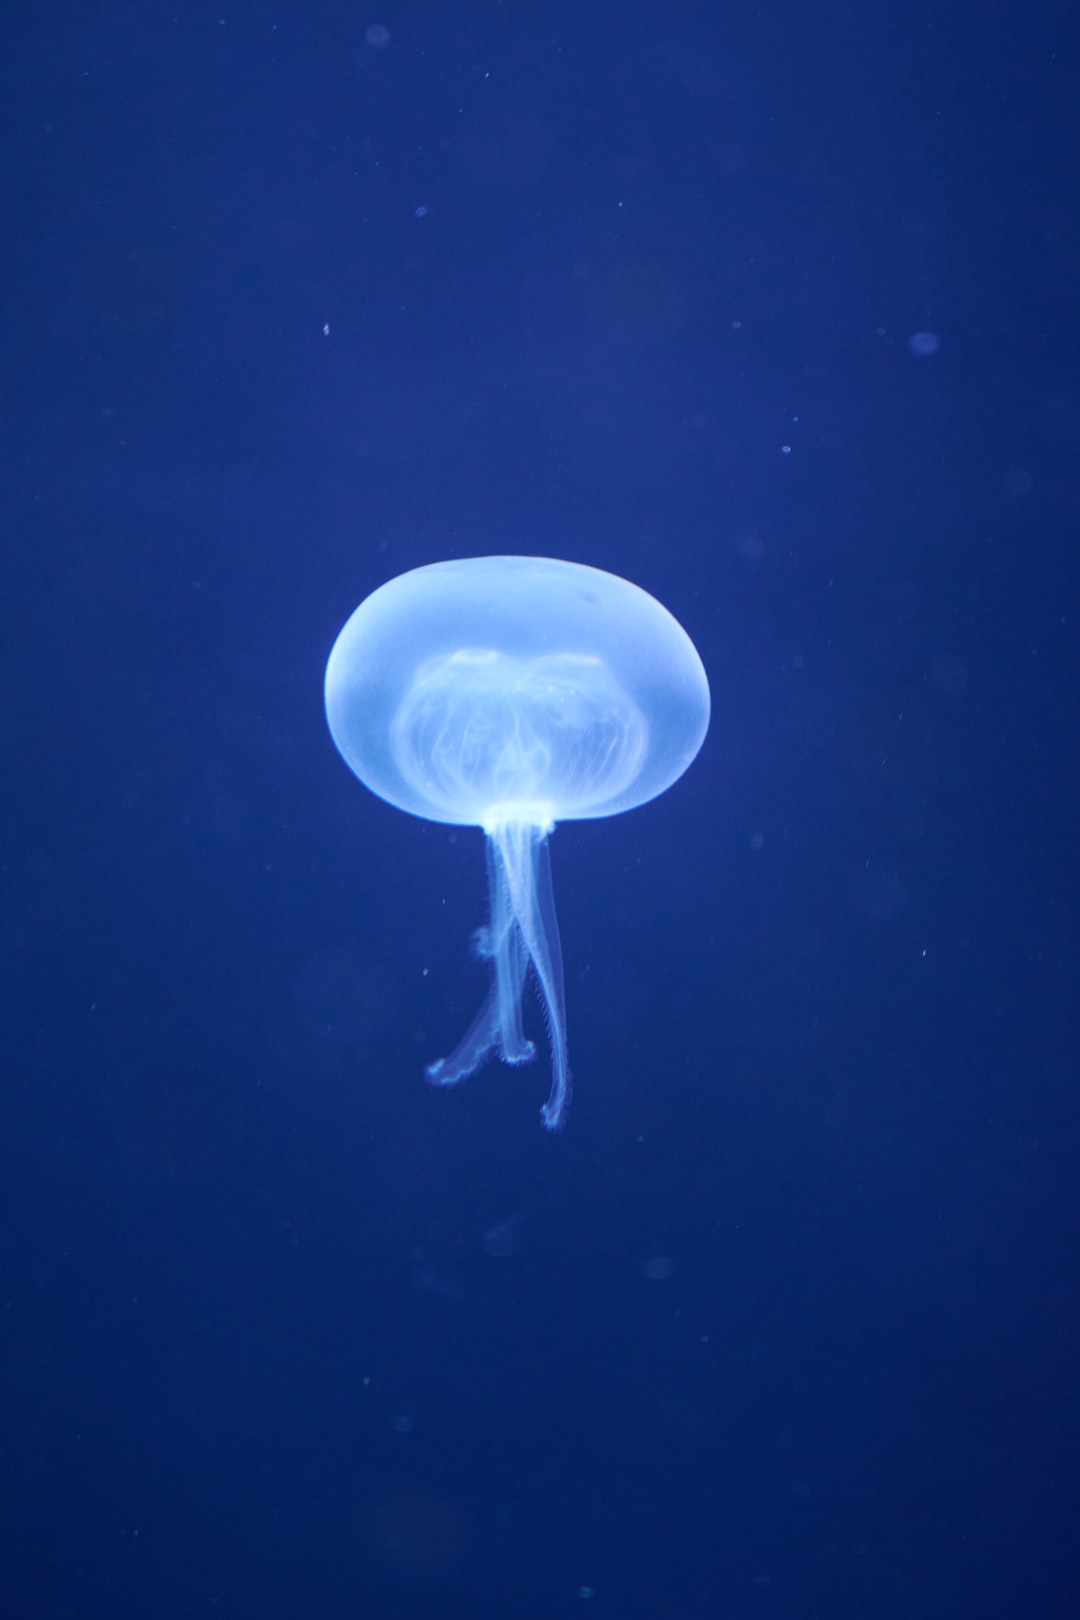 25 wichtige Fragen zu Wie Intelligent Ist Ein Oktopus?